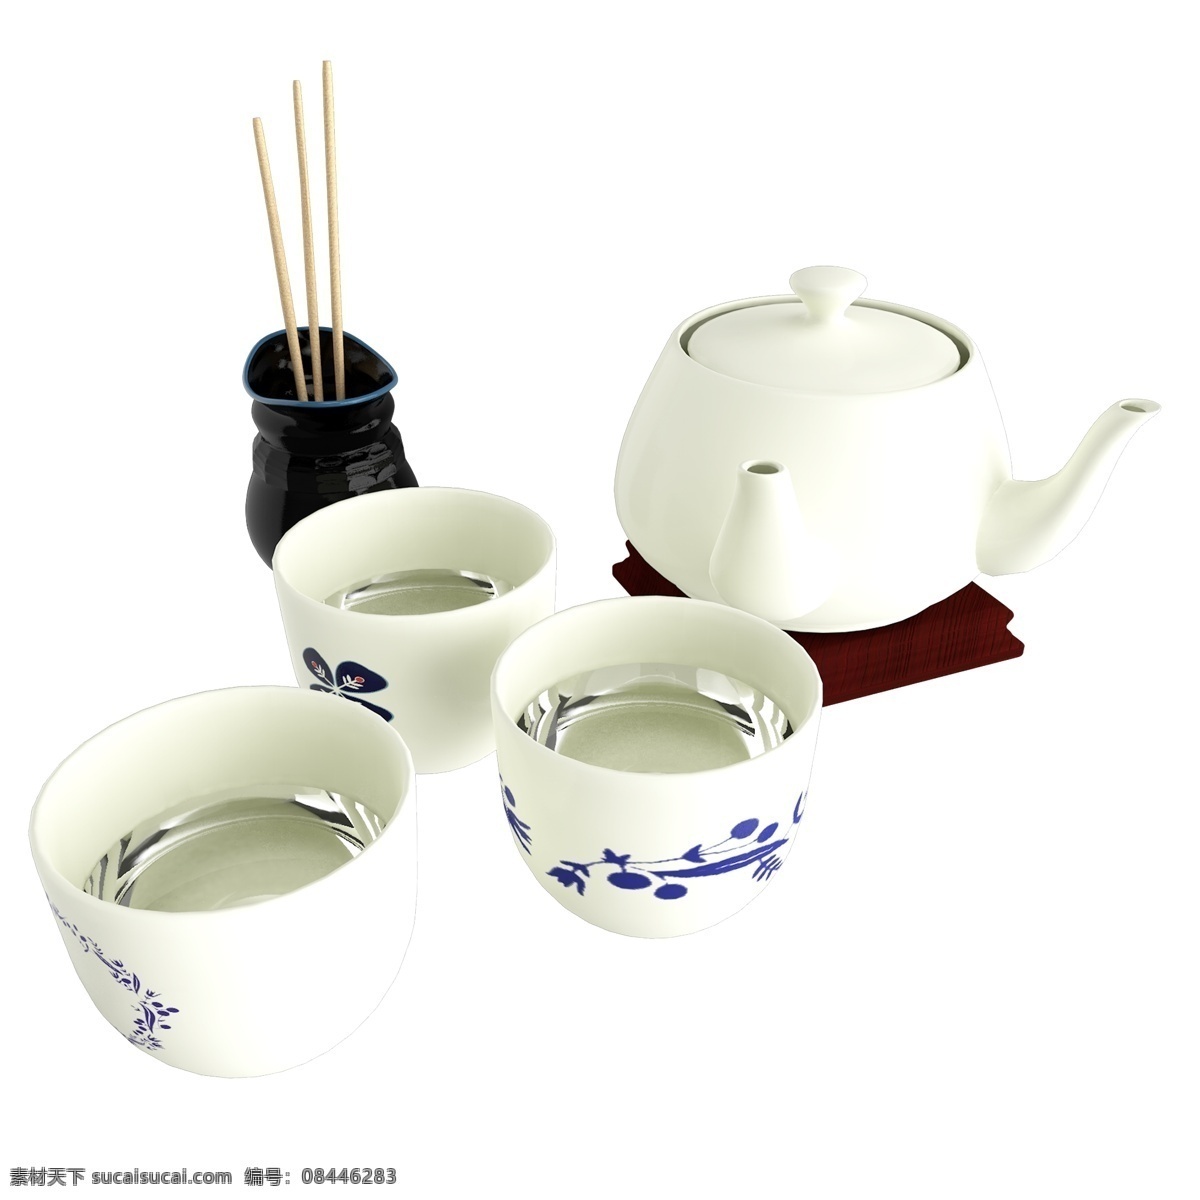 中国 风 立体 茶具 杯子 茶壶 中国风 中国风茶具 中国风杯子 中国风茶壶 立体茶具 立体杯子 立体茶壶